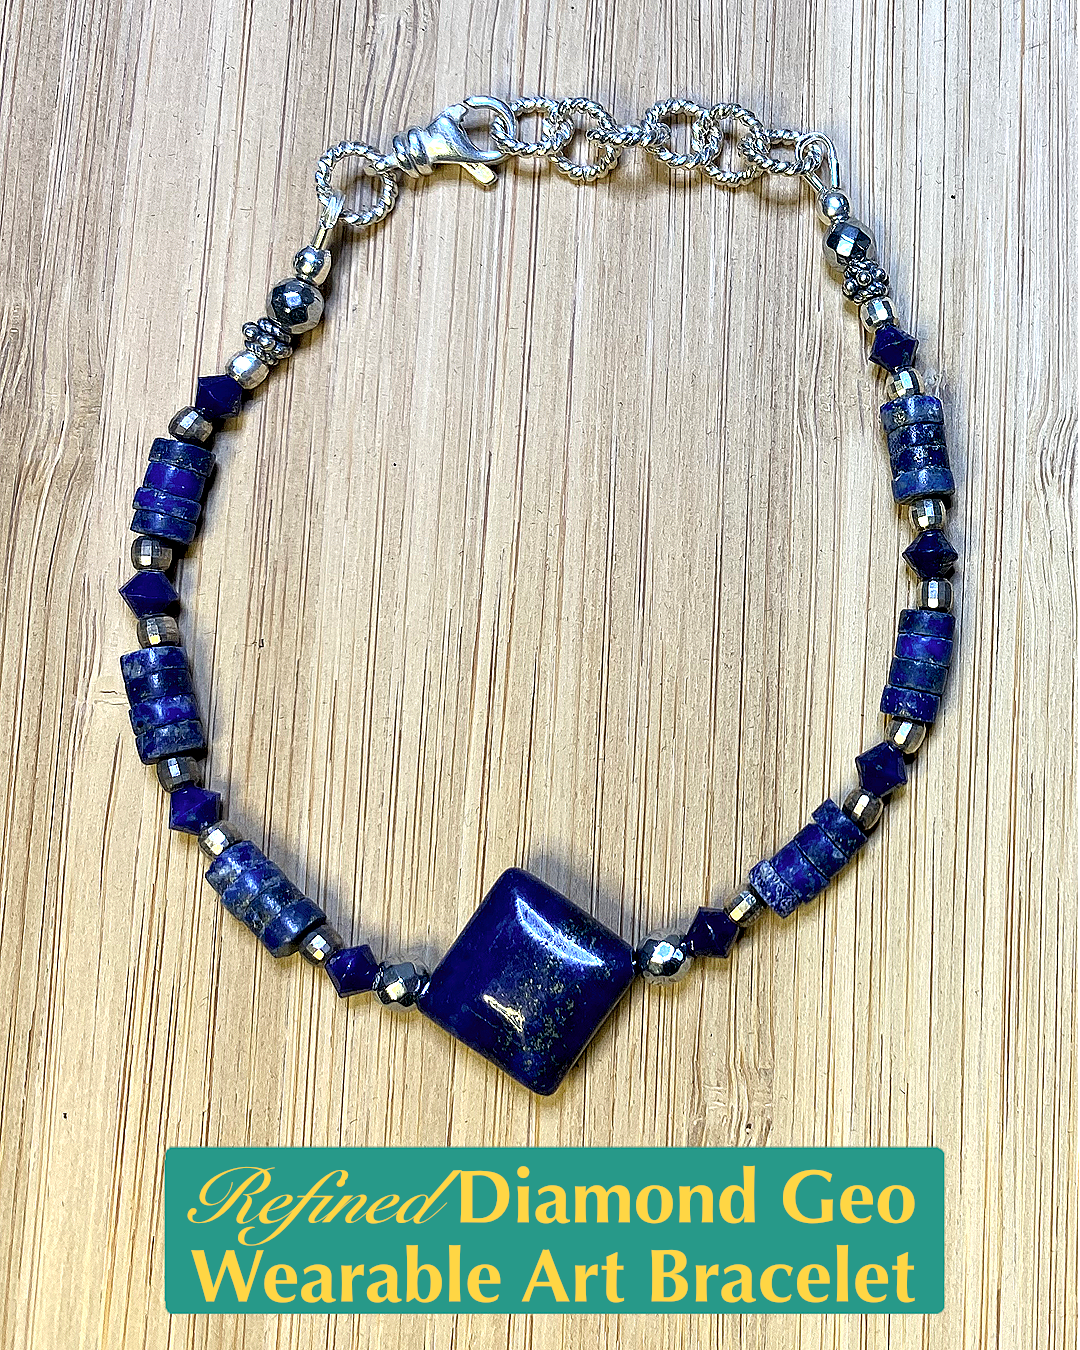 Refined Diamond Geo Wearable Art Bracelet